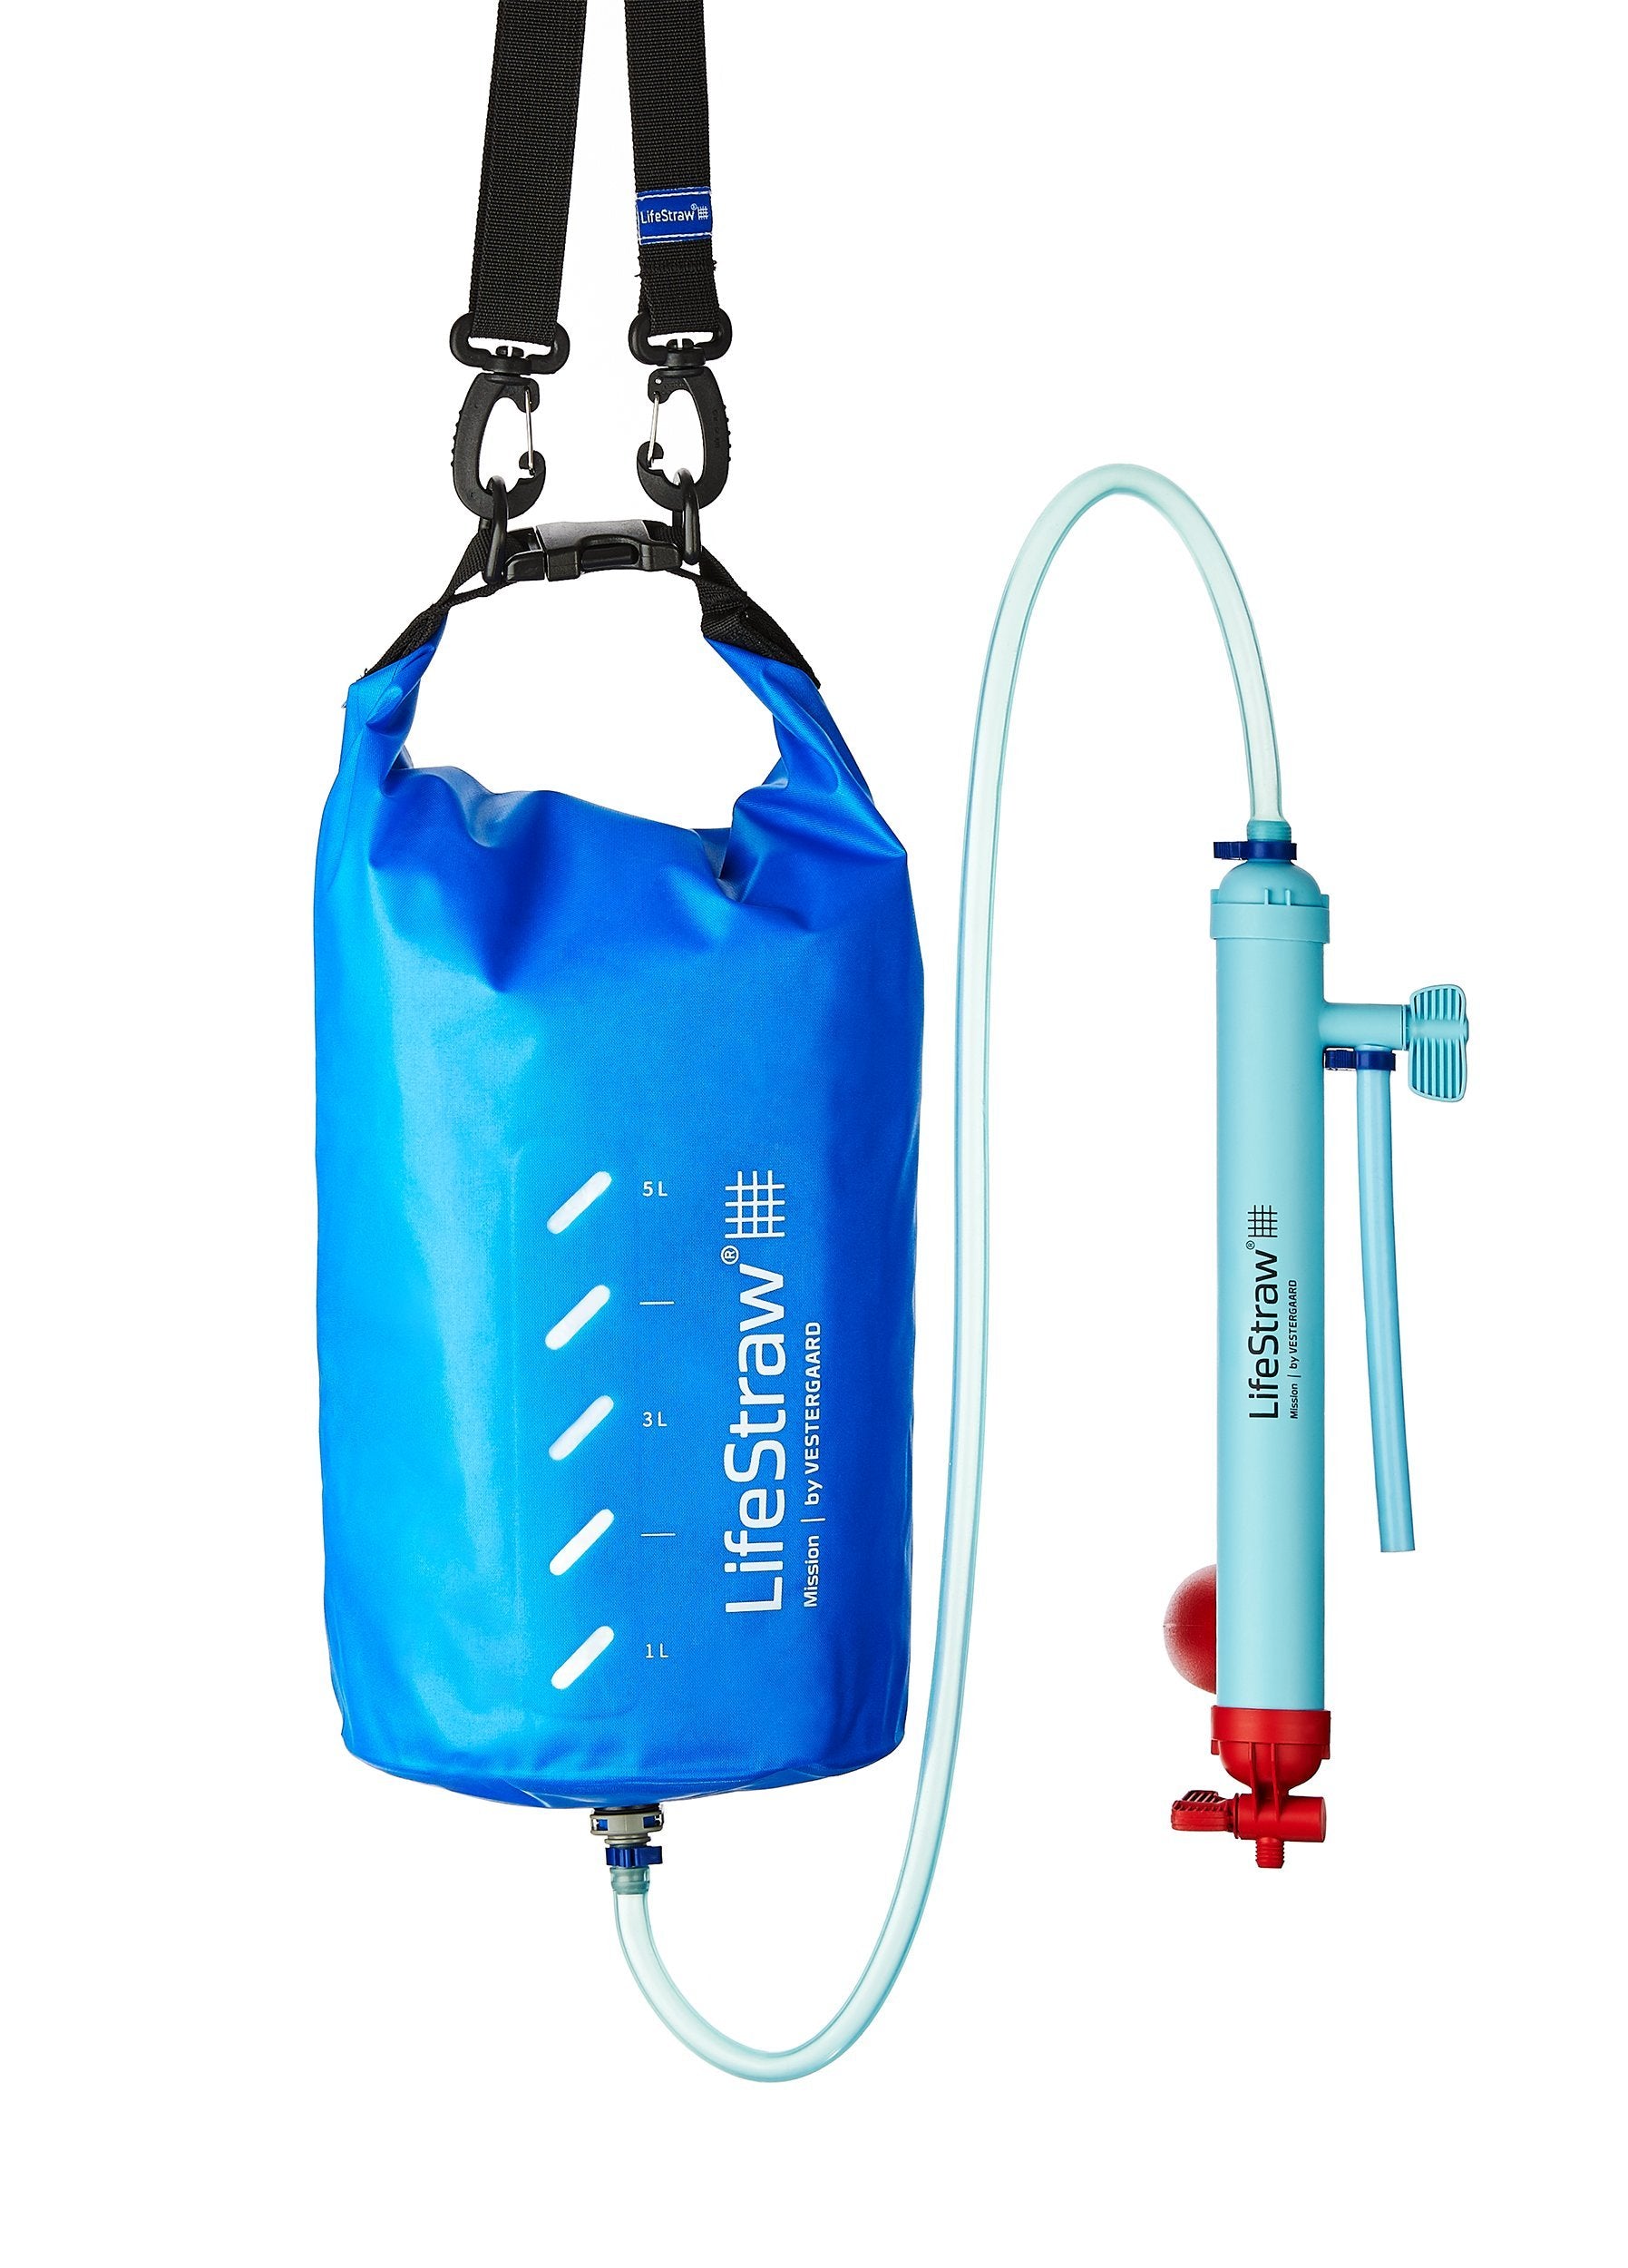 LifeStraw Mission Kompakter Wasserreiniger mit Hohem Volumen (12 Liter) Filter